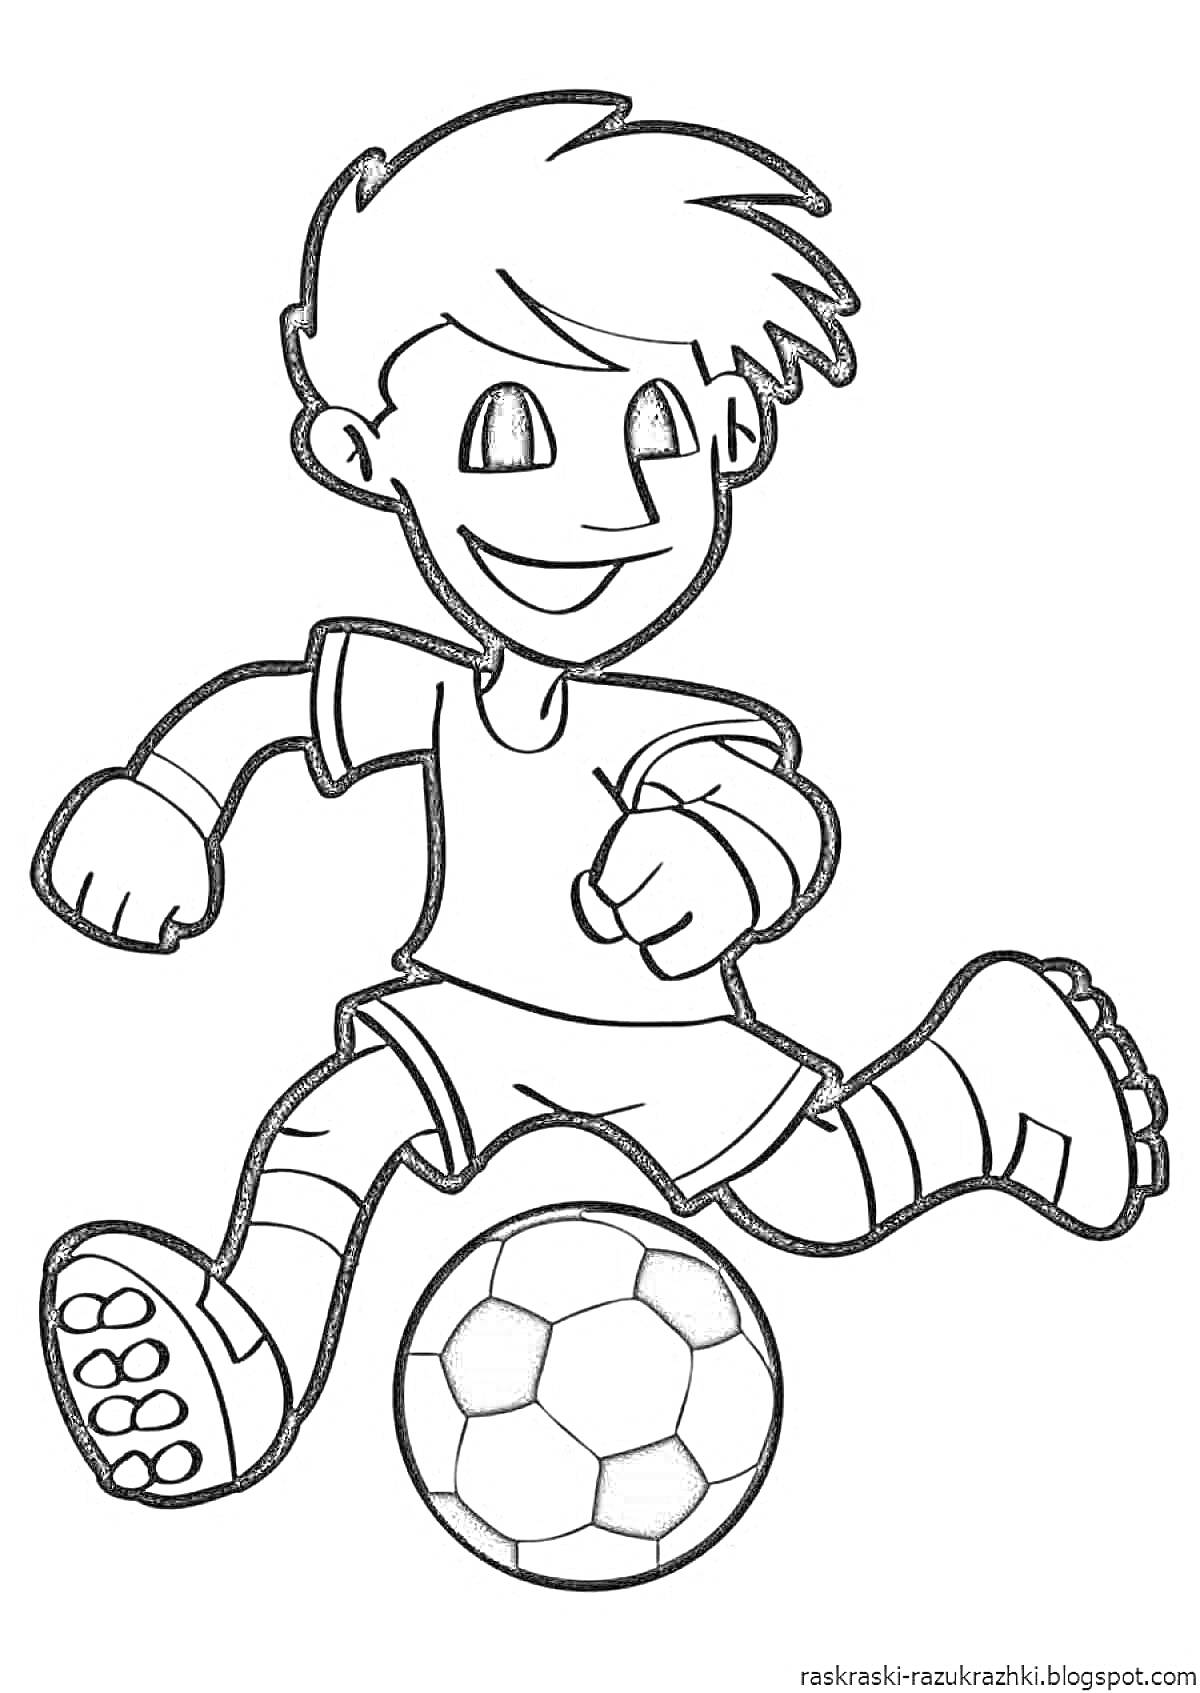 Раскраска Мальчик-футболист, бегущий с мячом, одет в футболку, шорты и носки, с выраженным улыбчивым лицом и поднятой рукой.